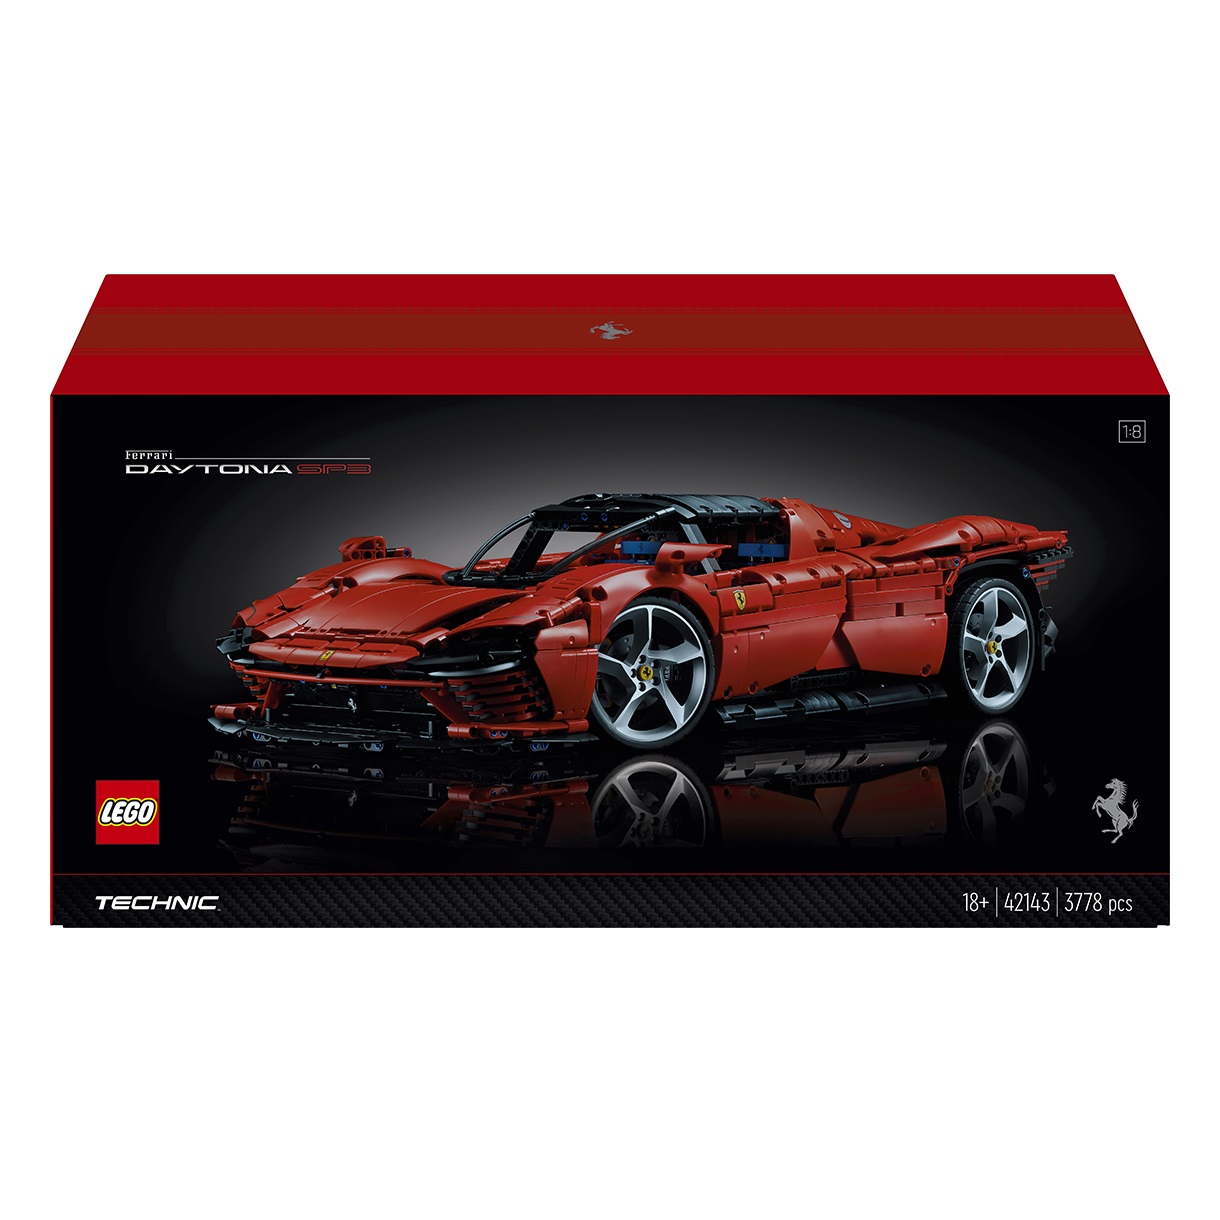 Конструктор LEGO Technic Ferrari Daytona SP3, 3778 предметов (42143) - фото 1